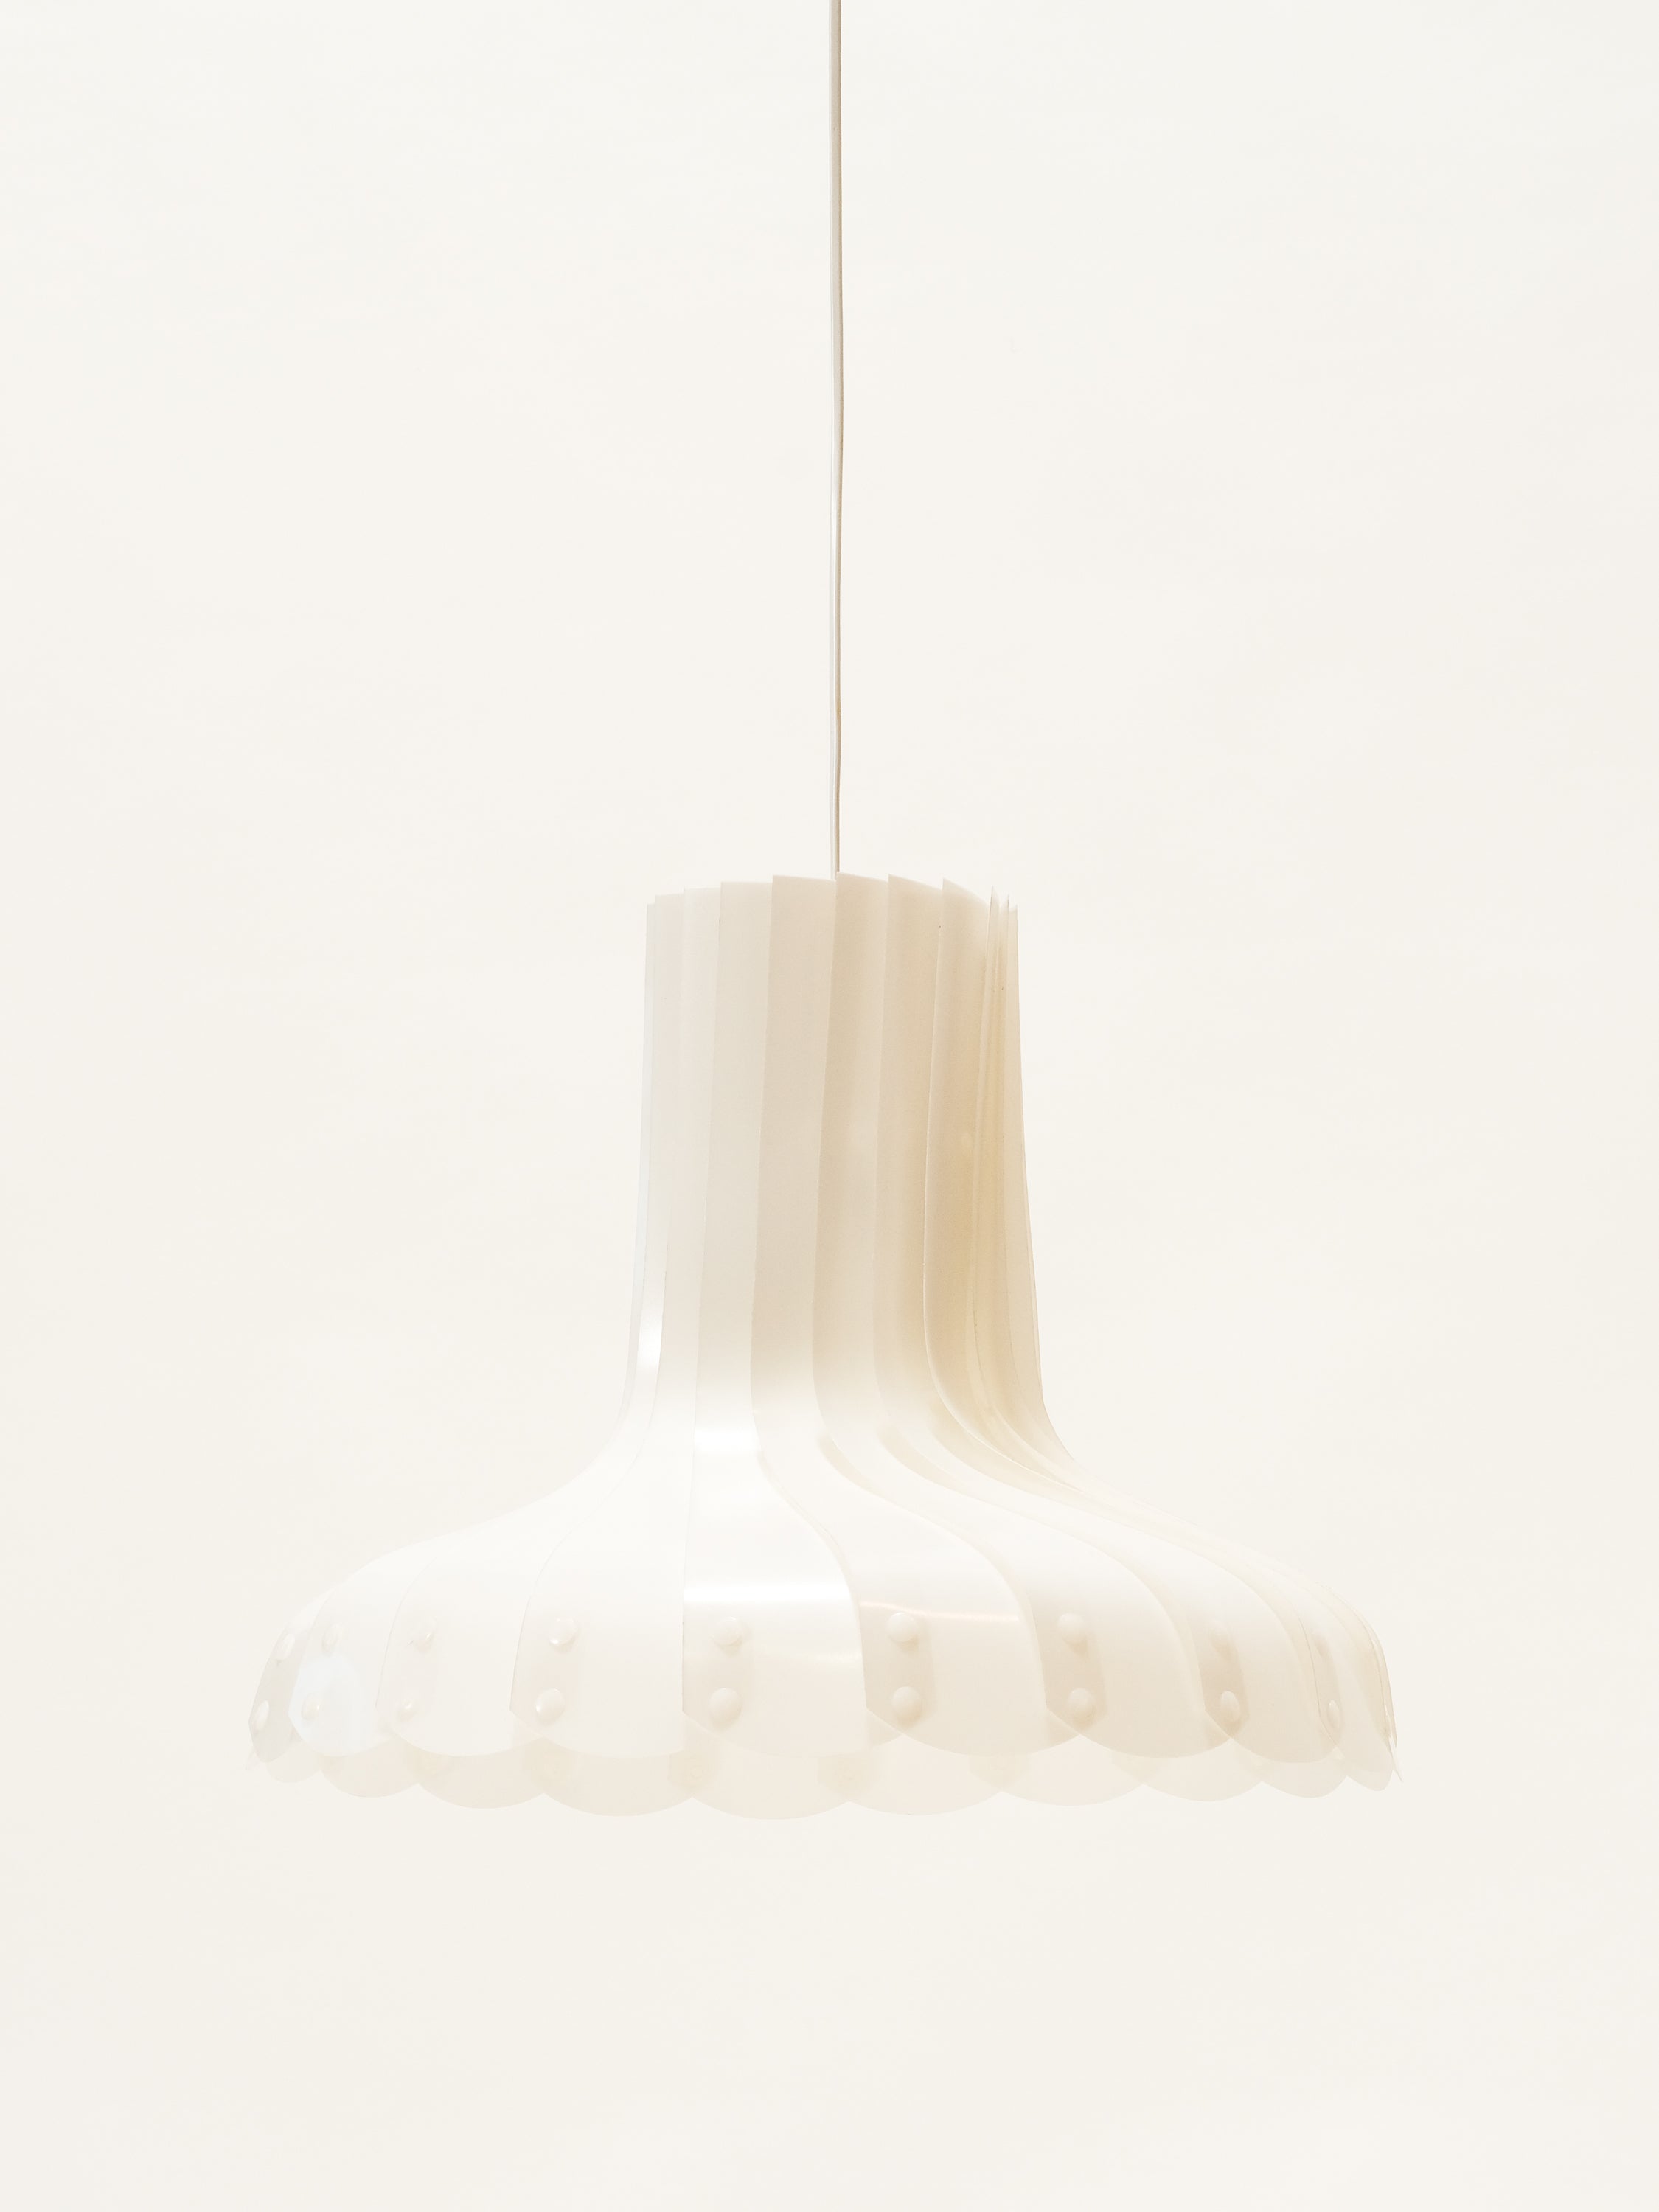 White Model TN 70 Ceiling Lamp by Hans-Agne Jakobsson, Markaryd, Sweden